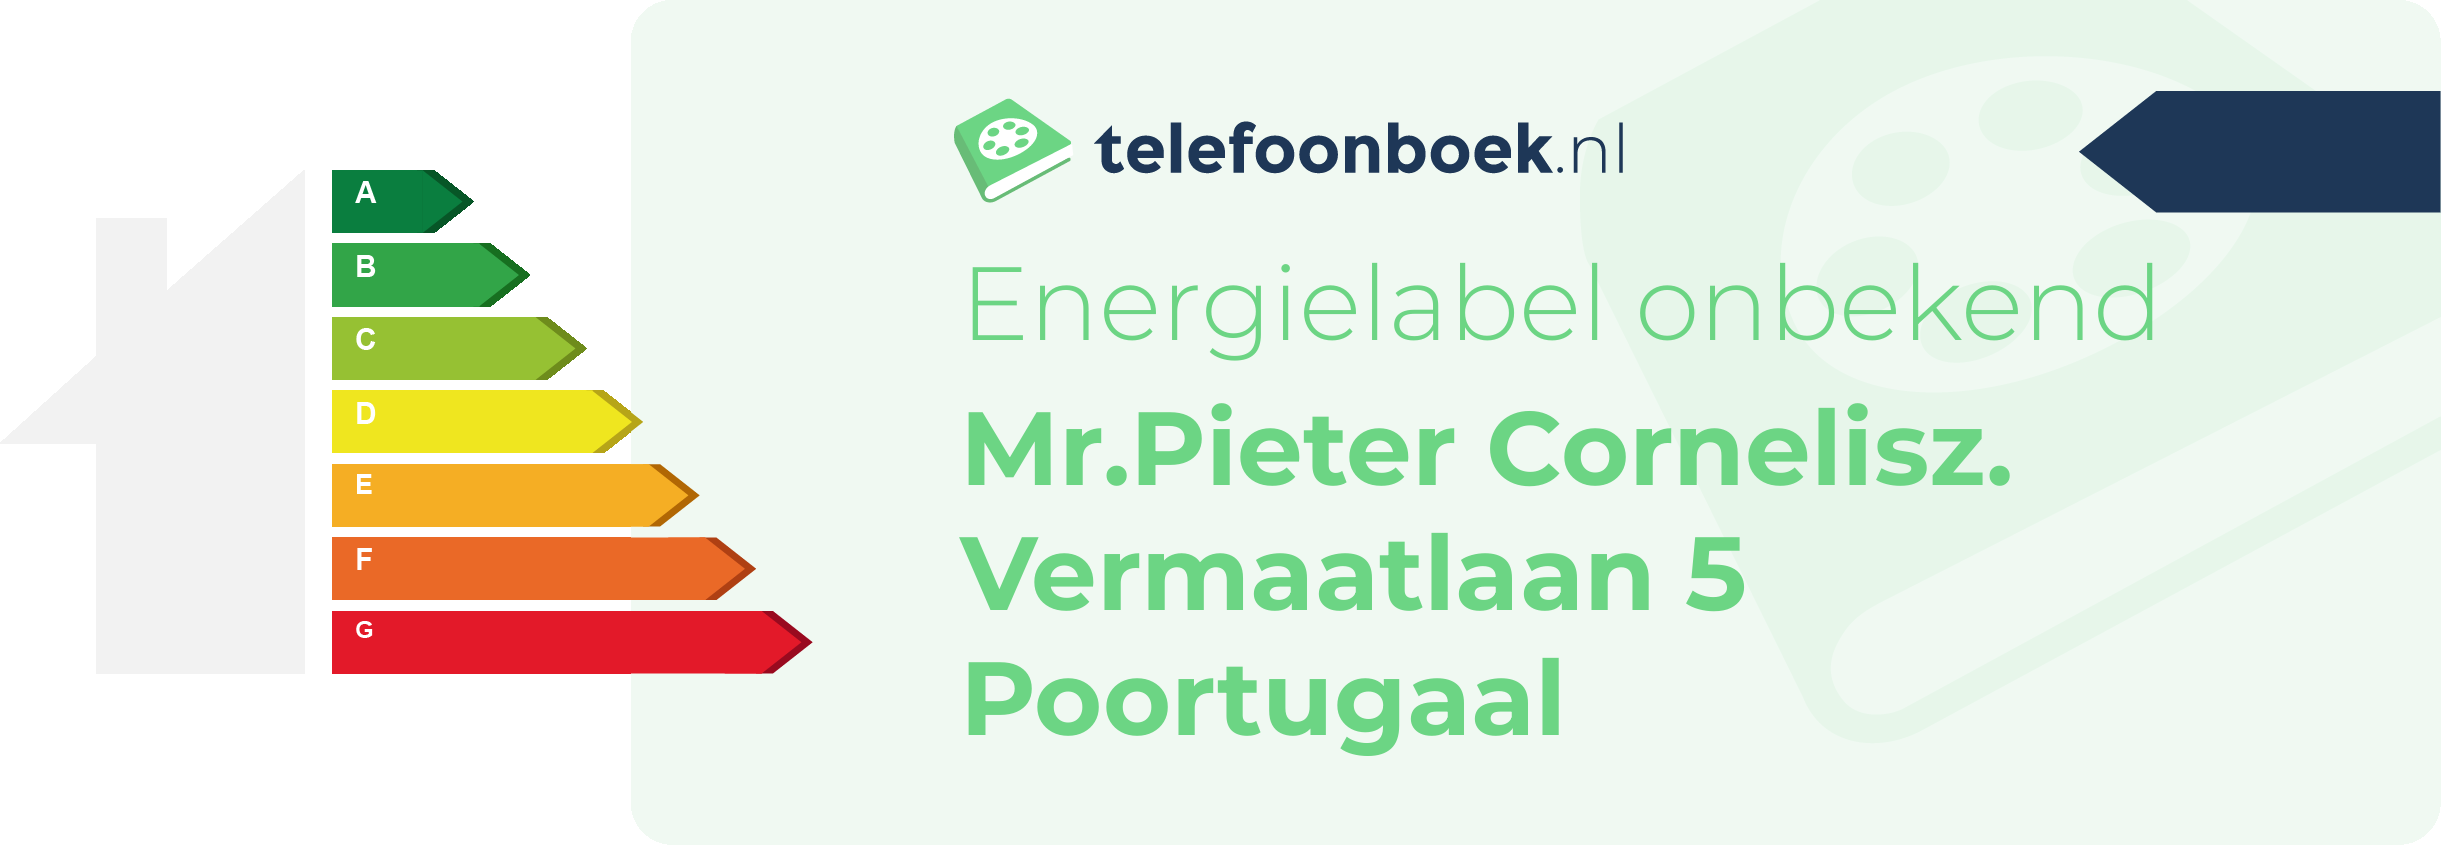 Energielabel Mr.Pieter Cornelisz. Vermaatlaan 5 Poortugaal